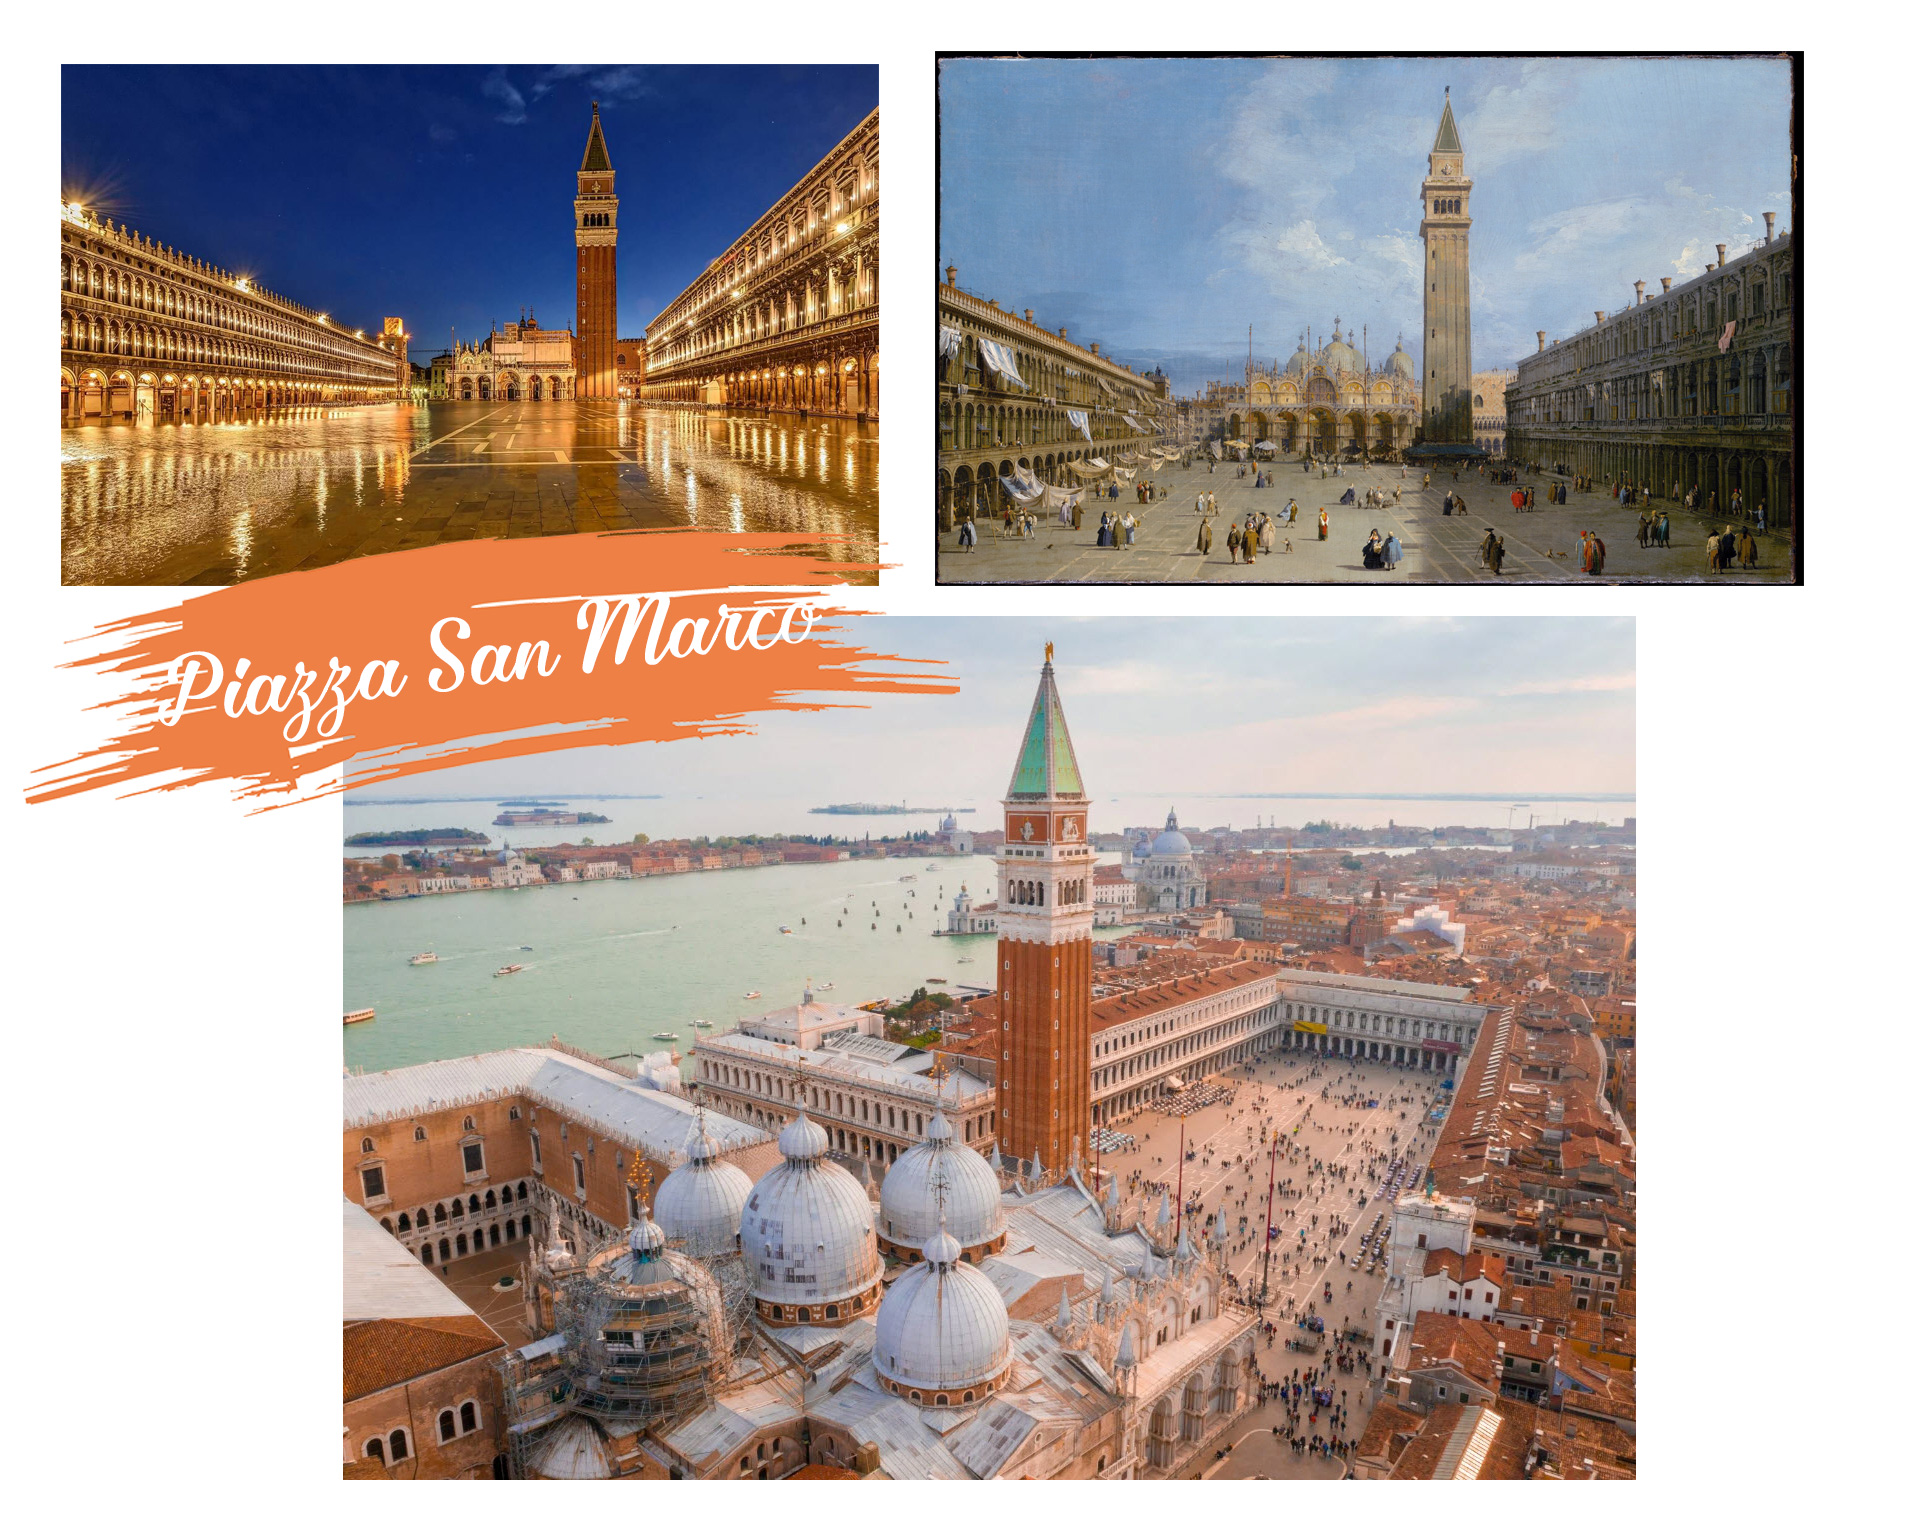 Chiêm ngưỡng những kỳ quan kiến trúc và phong cảnh lộng lẫy của Venice - 2